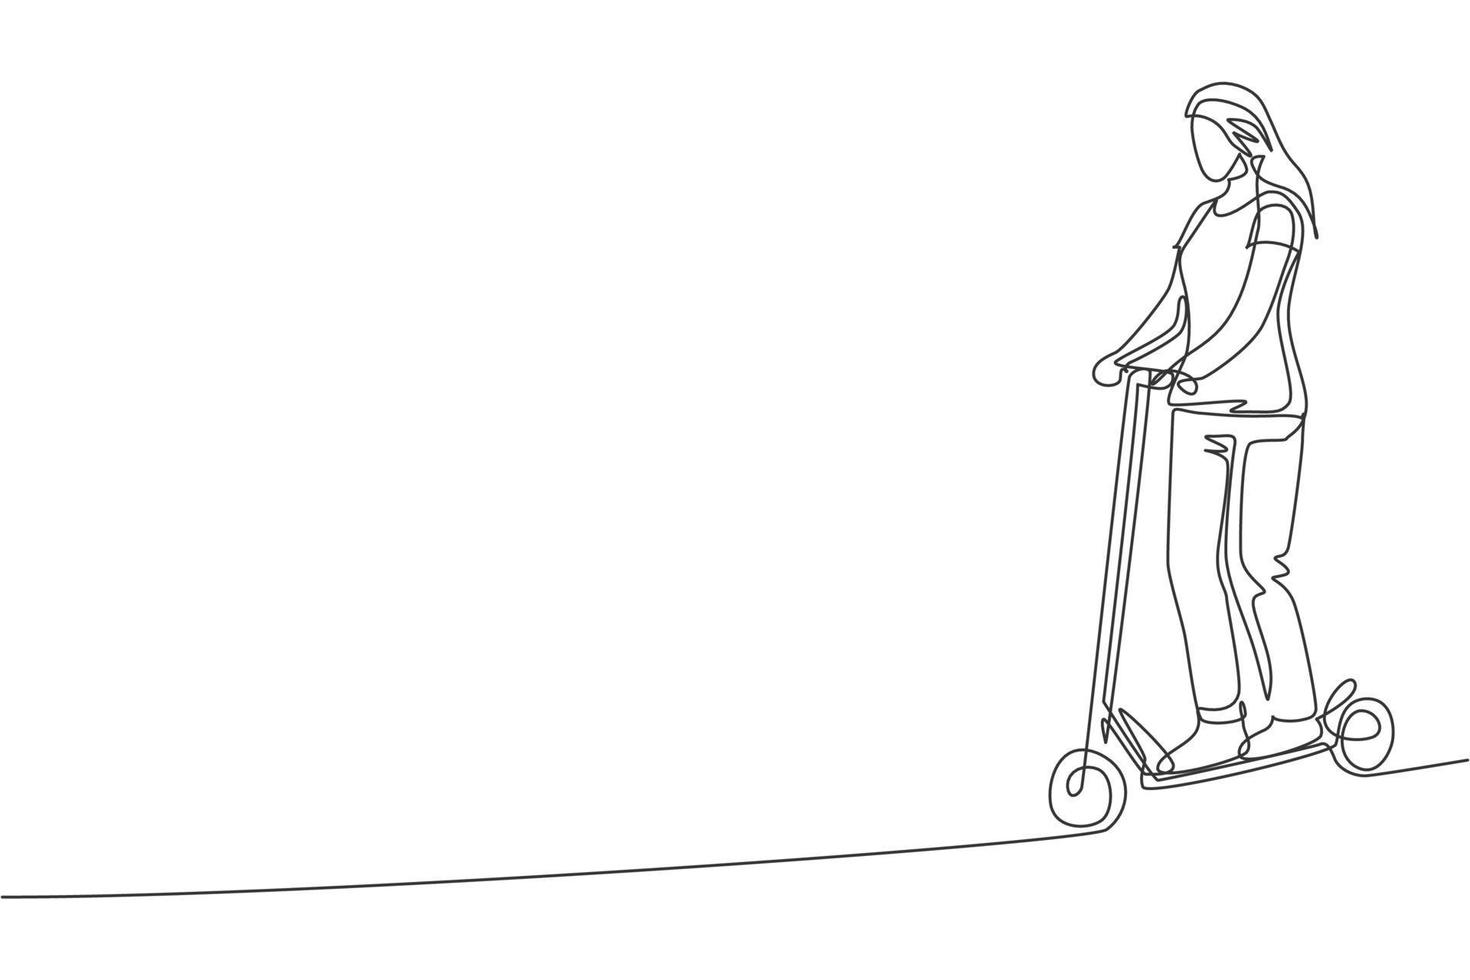 enda kontinuerlig linje ritning ung glad kvinna som rider elektrisk scooter på allmän plats. miljövänlig transport. urban livsstilskoncept. trendiga en linje rita grafisk design vektor illustration